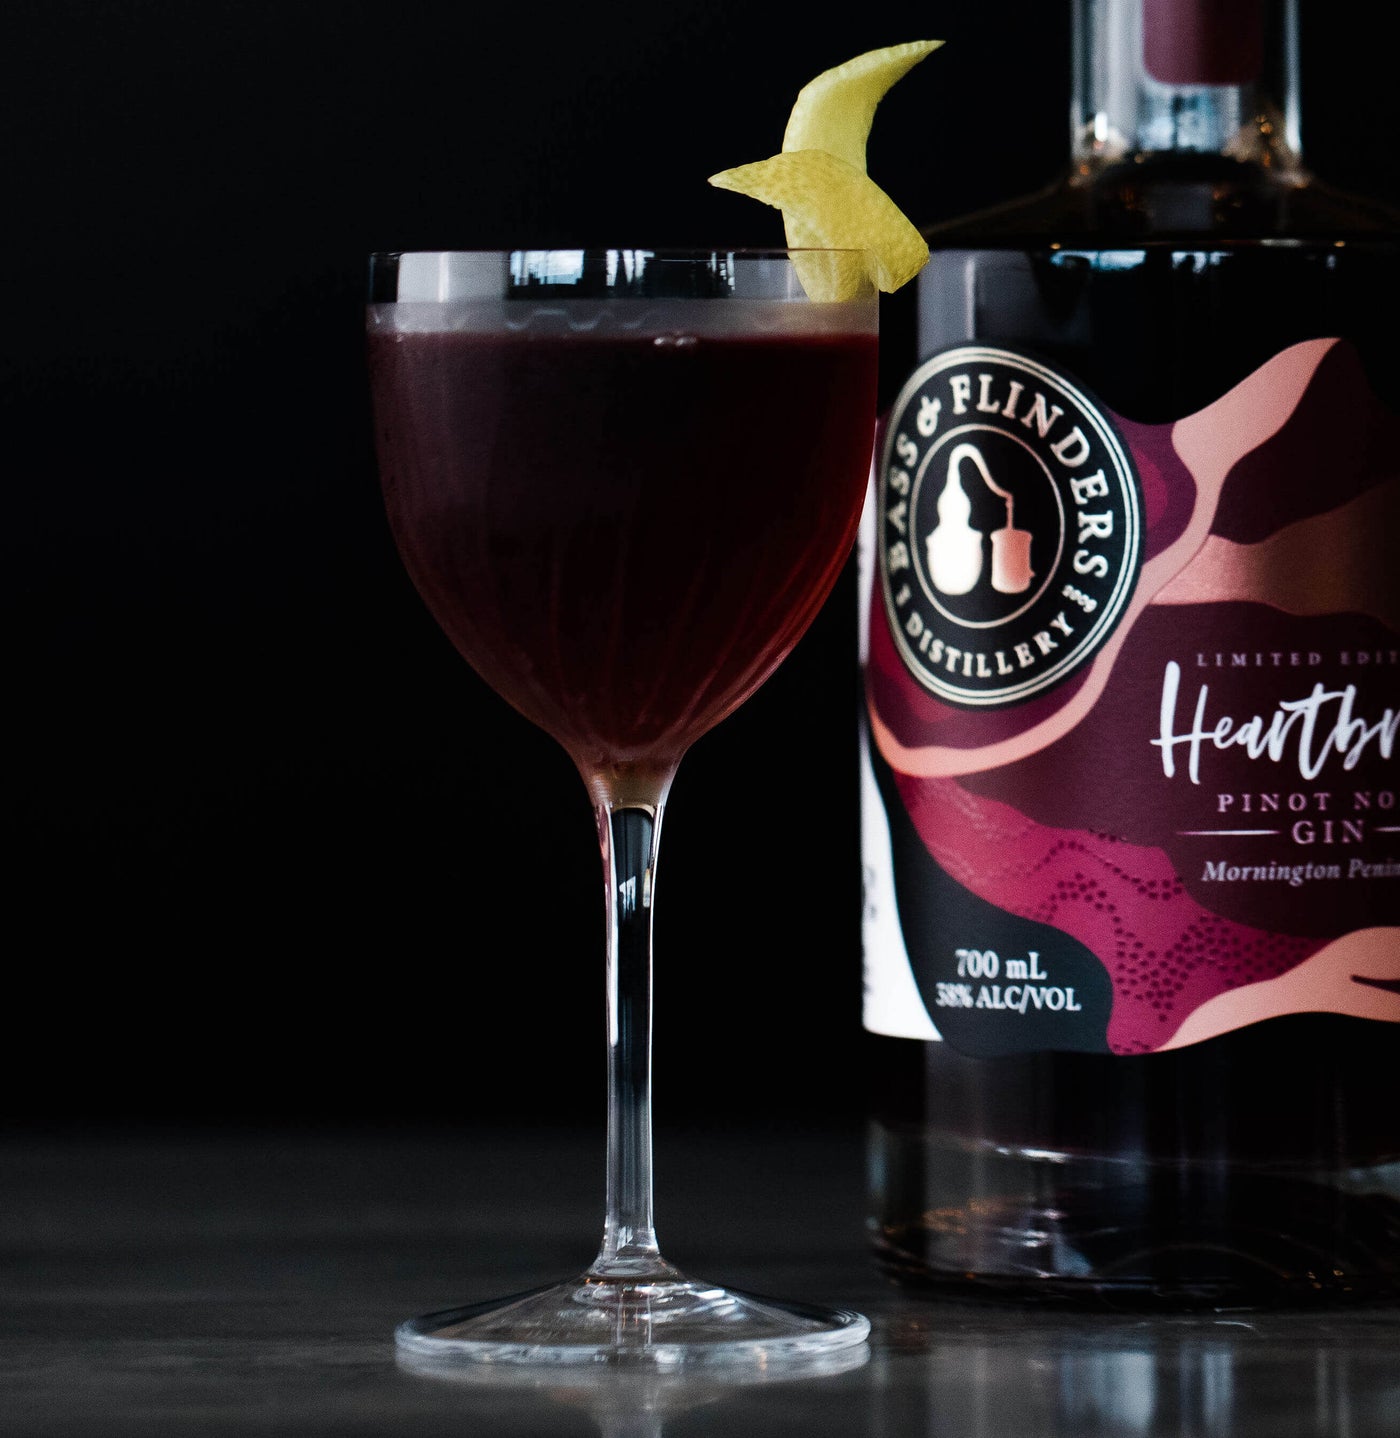 Bass & Flinders Distillery Heartbreak Gin Secret Love cocktail recipe